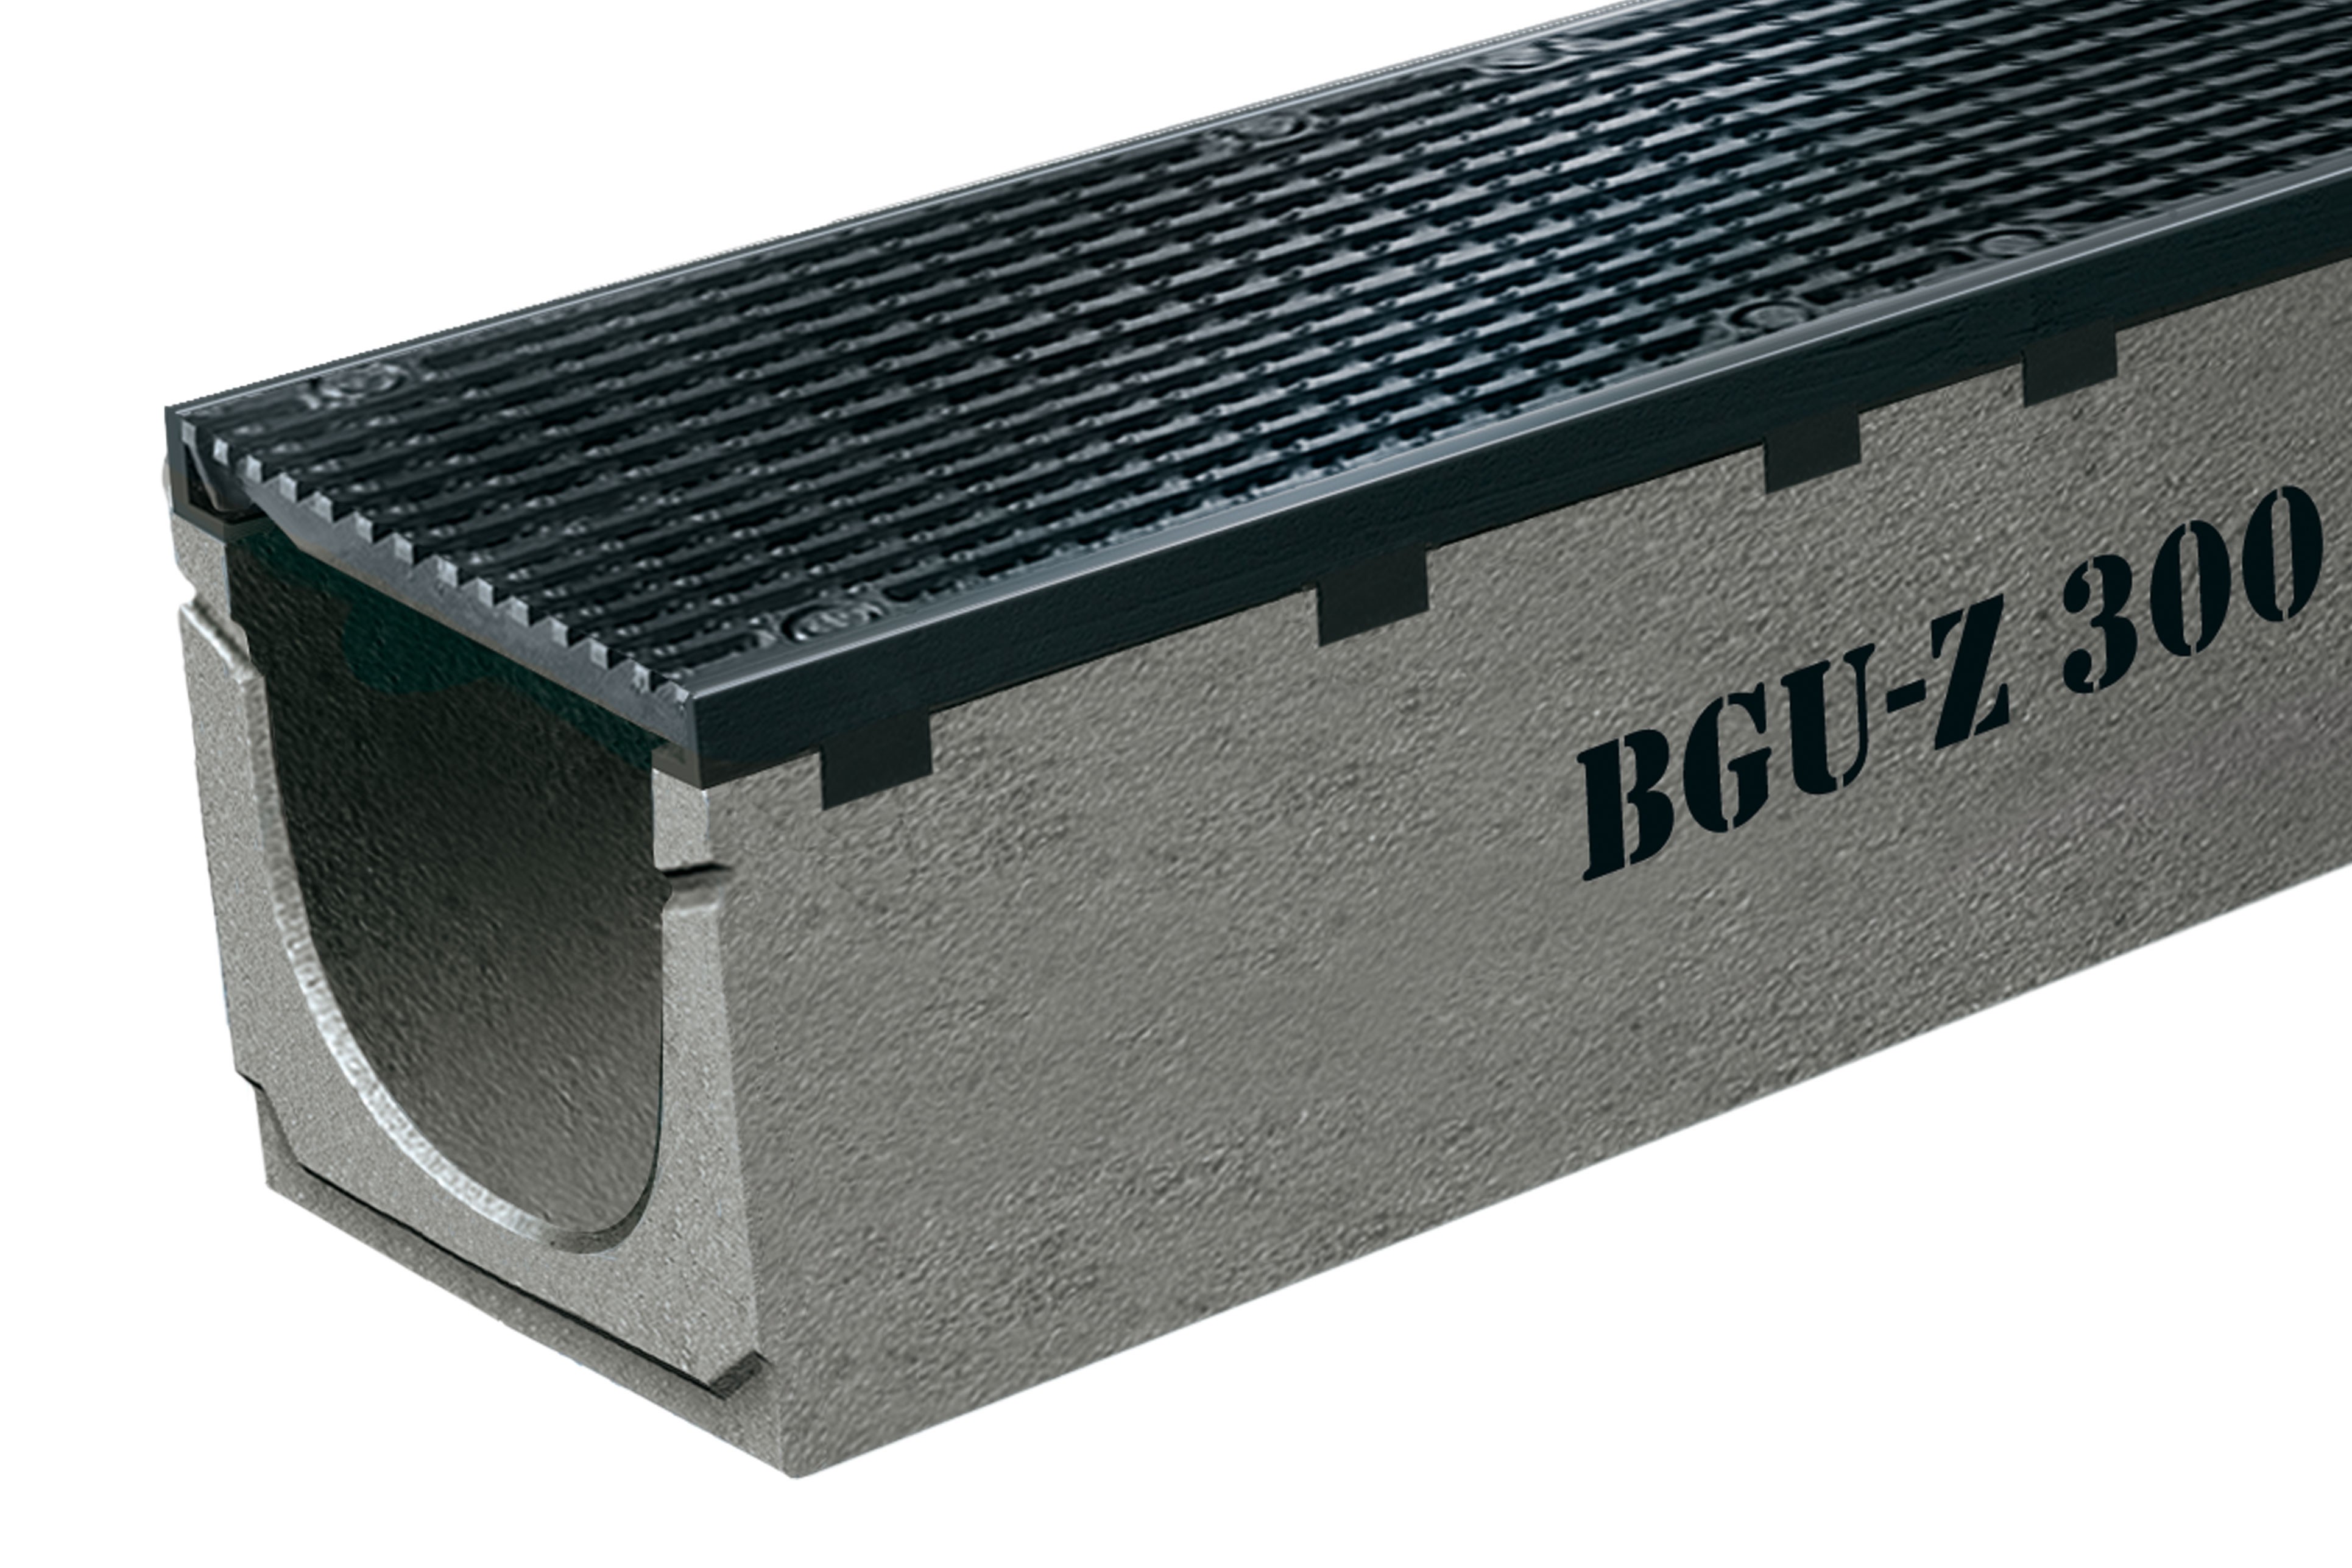 BGU-Z 300